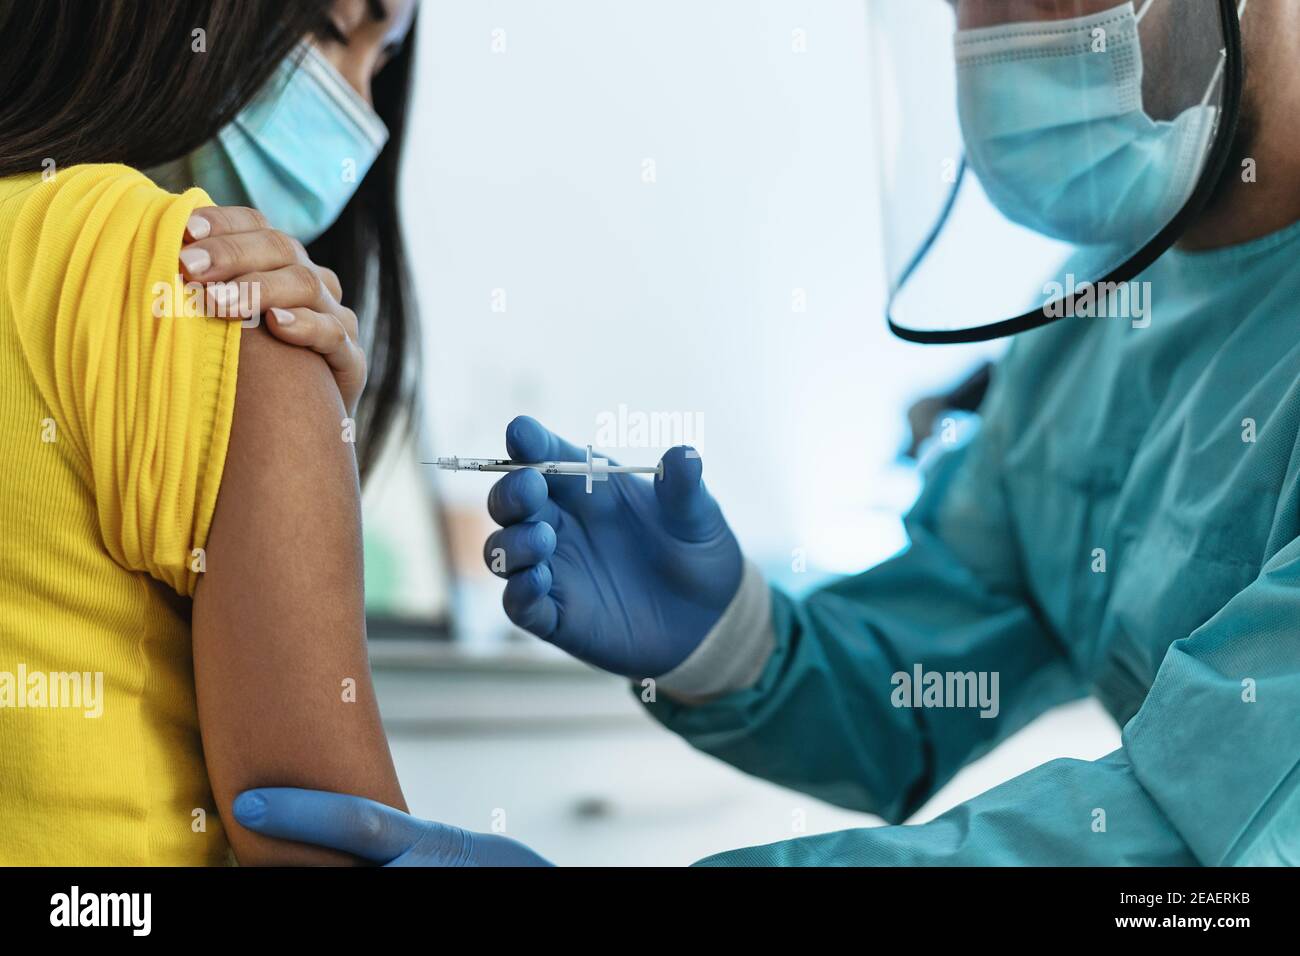 Travailleur médical qui fait l'injection de vaccin à la patiente pour prévenir Et arrêter l'épidémie de virus corona - médecine de soins de santé et de guérison contre covid19 Banque D'Images